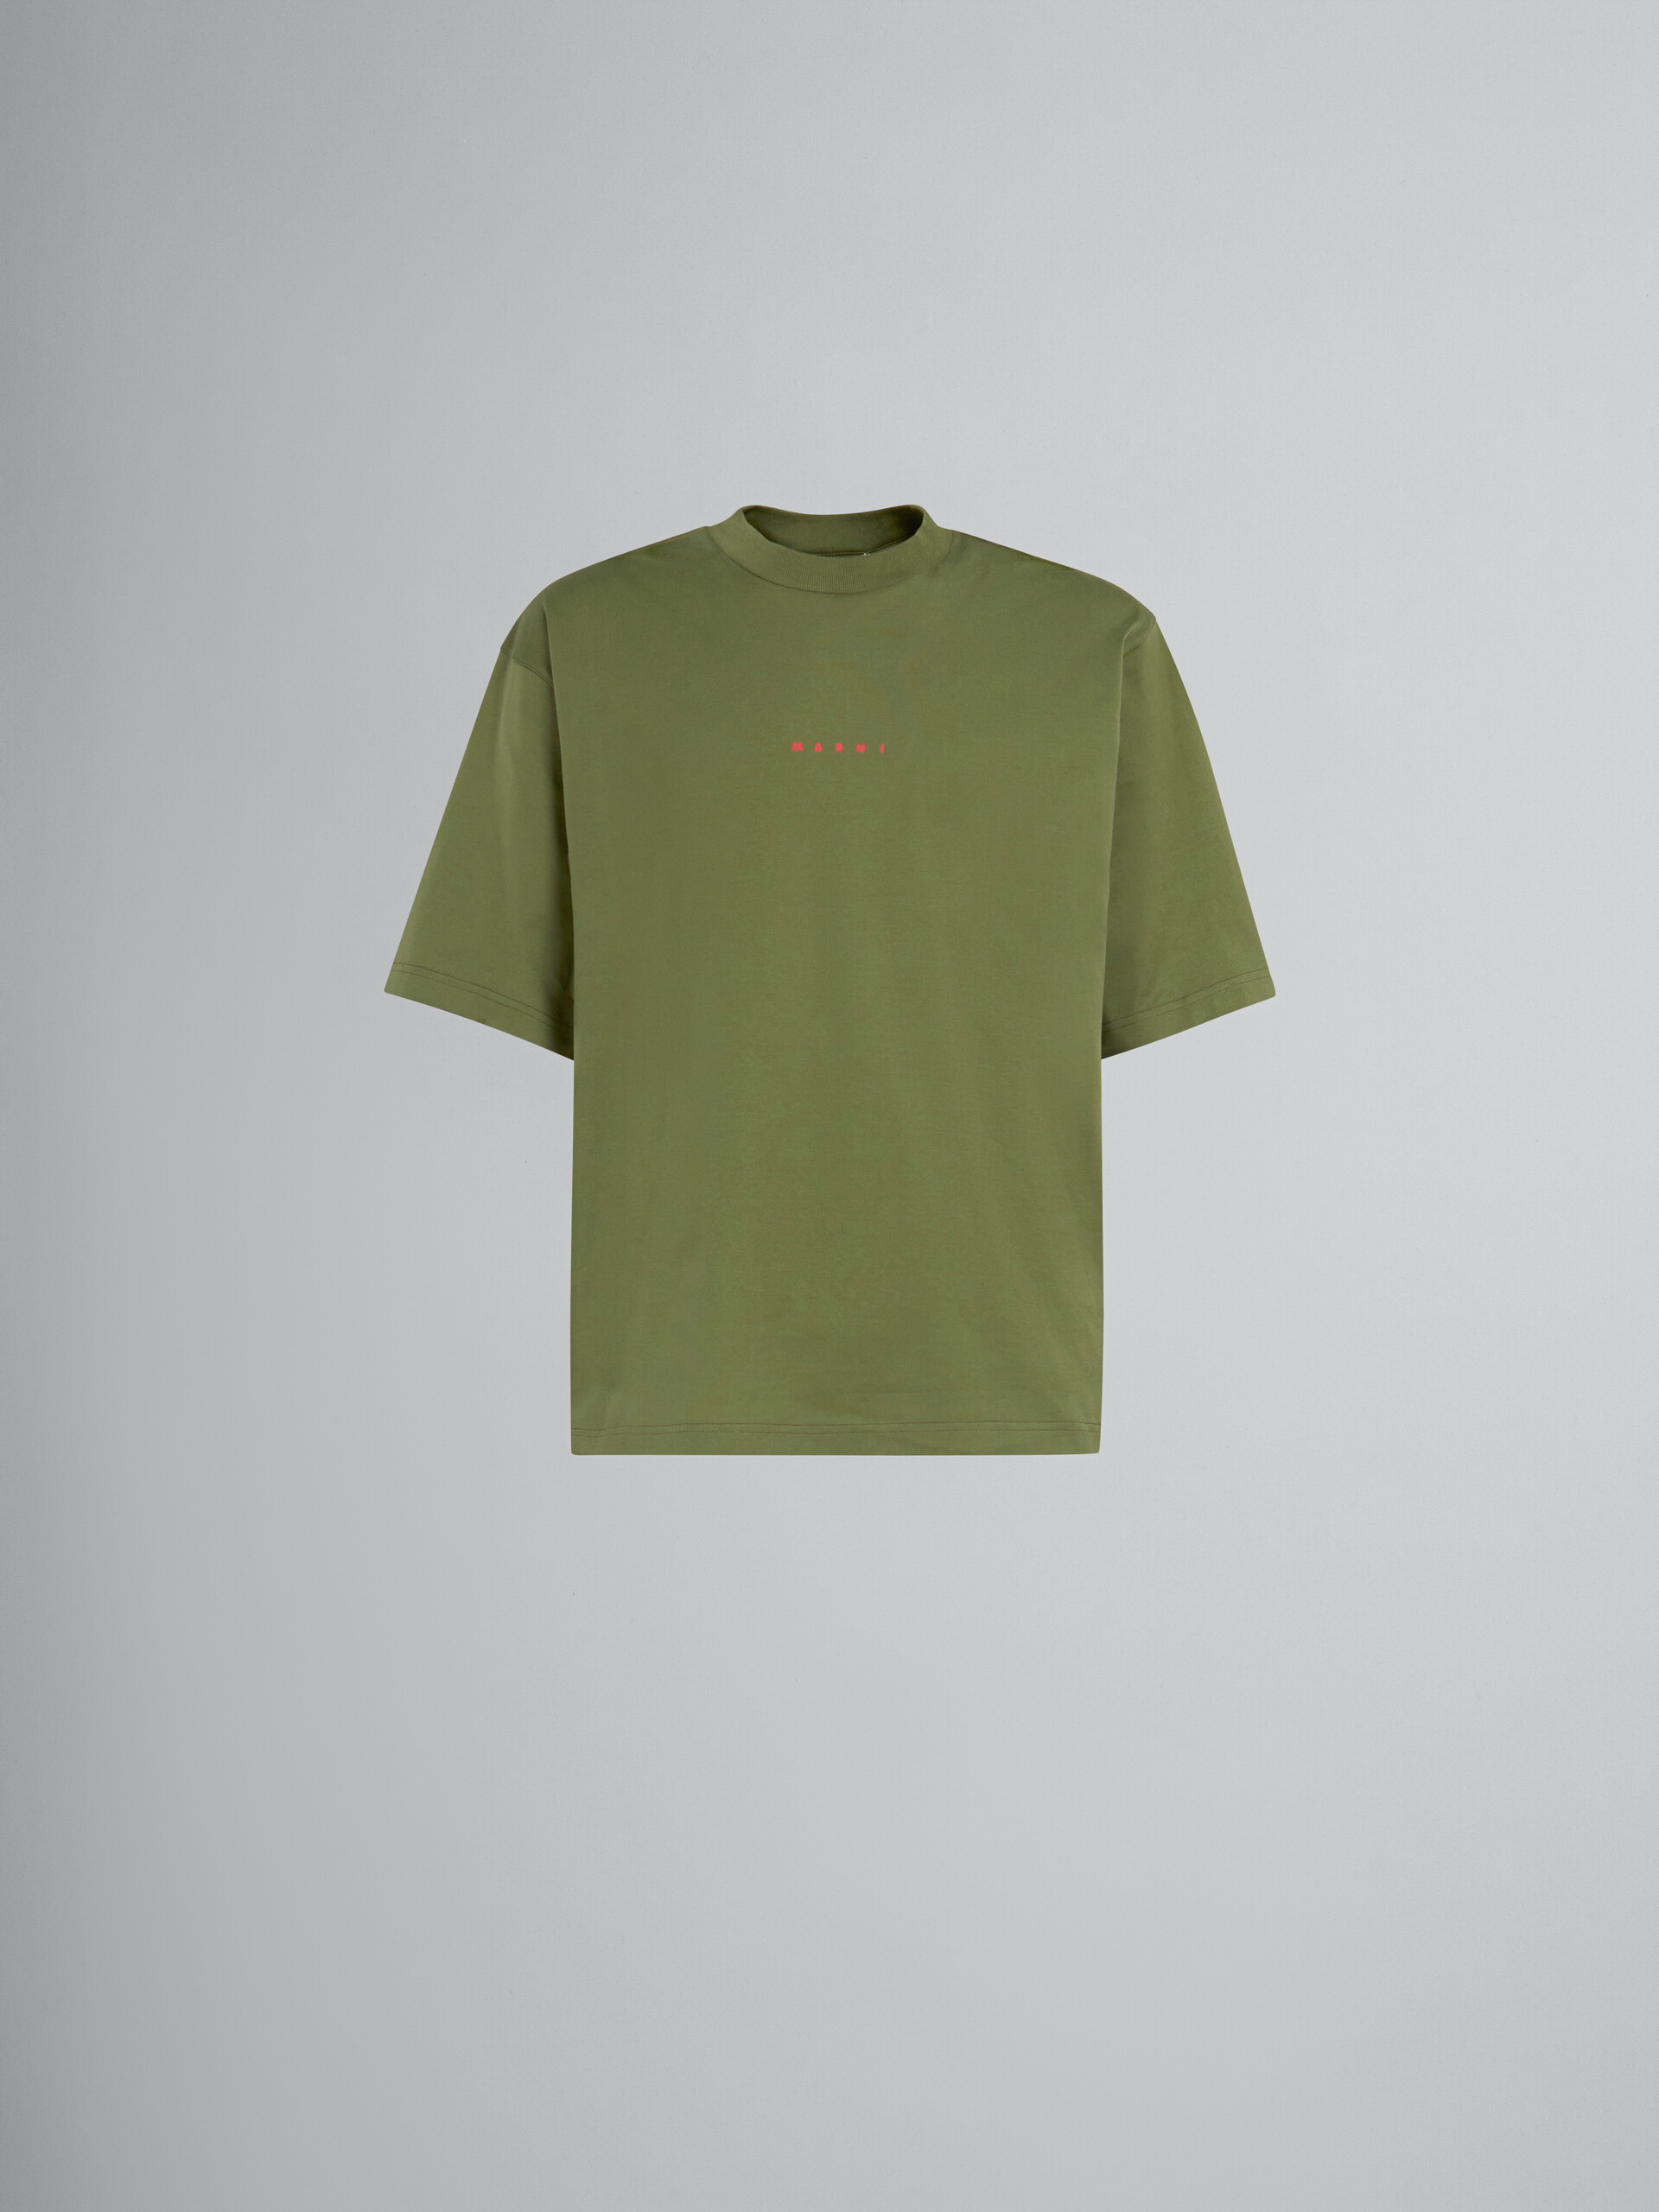 ピンク ロゴ入り オーガニックコットン Tシャツ(ボクシーフィット) - Tシャツ - Image 1